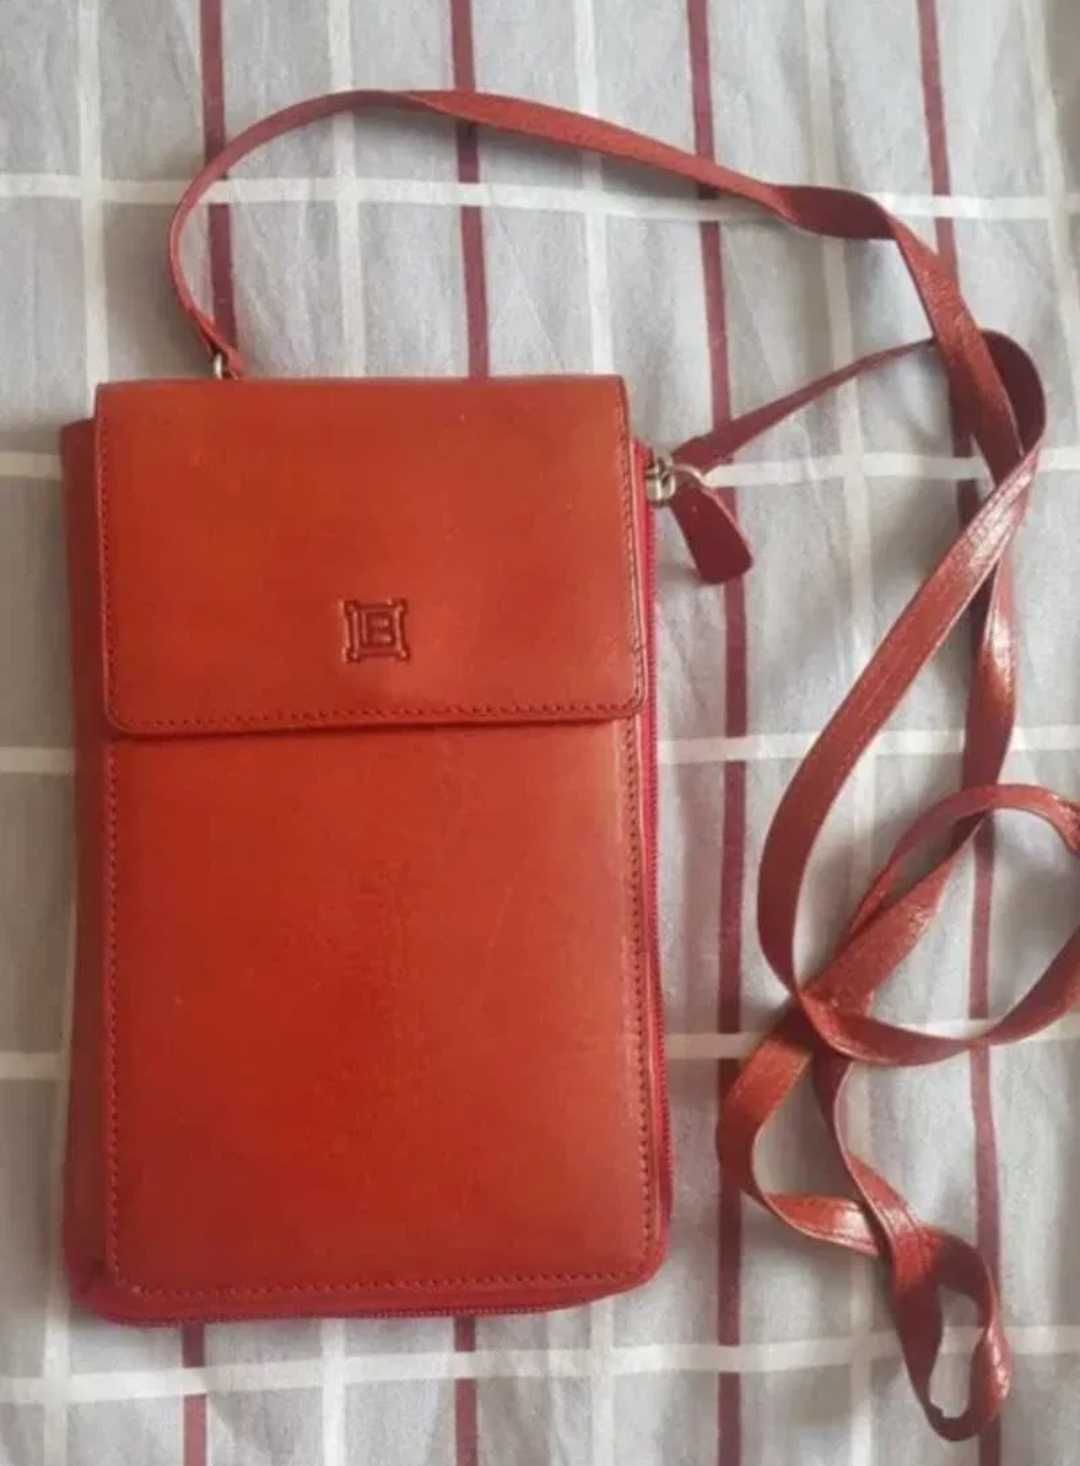 Кошелек портмане сумочка Italy женский коралловый цвет